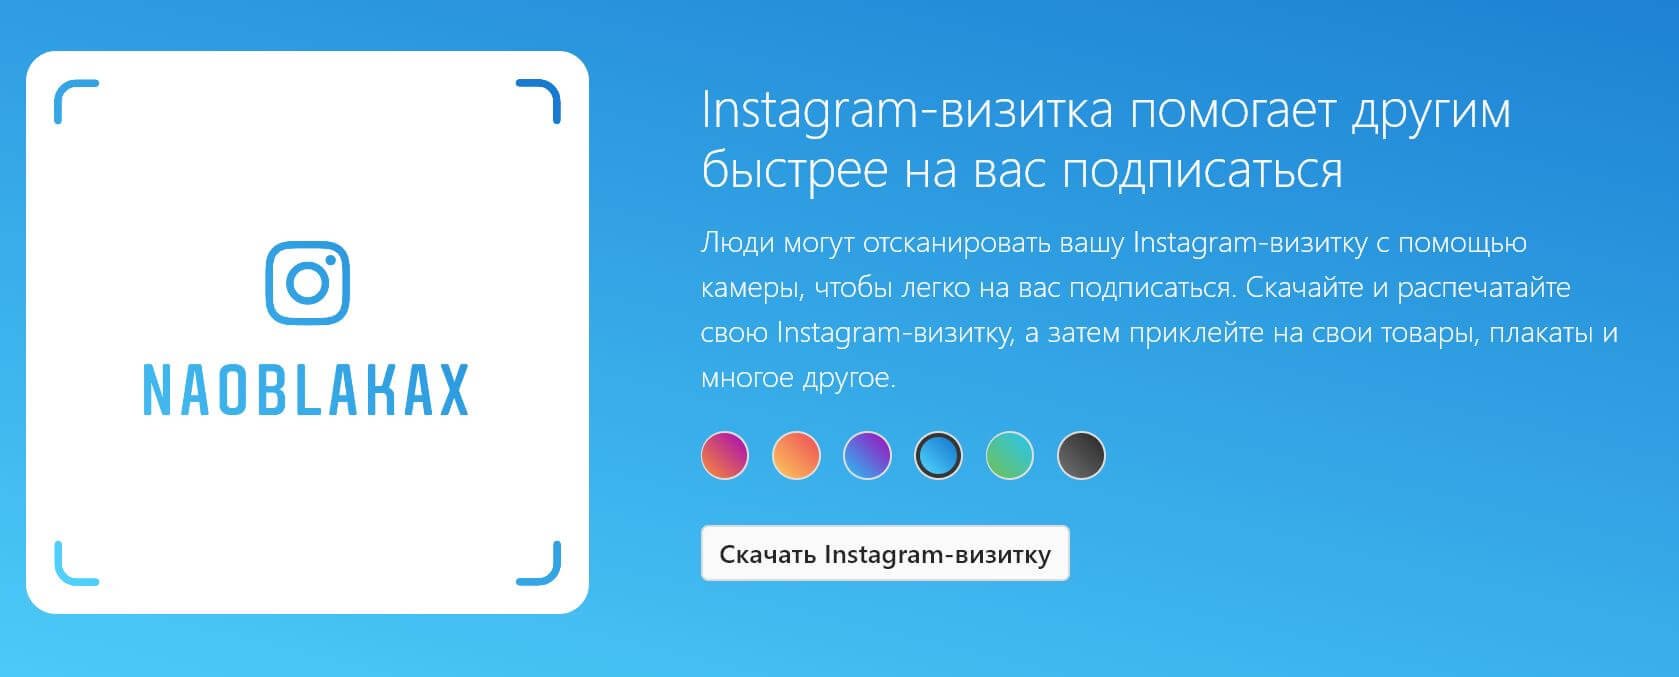 Як сканувати Instagram візитку іншої людини